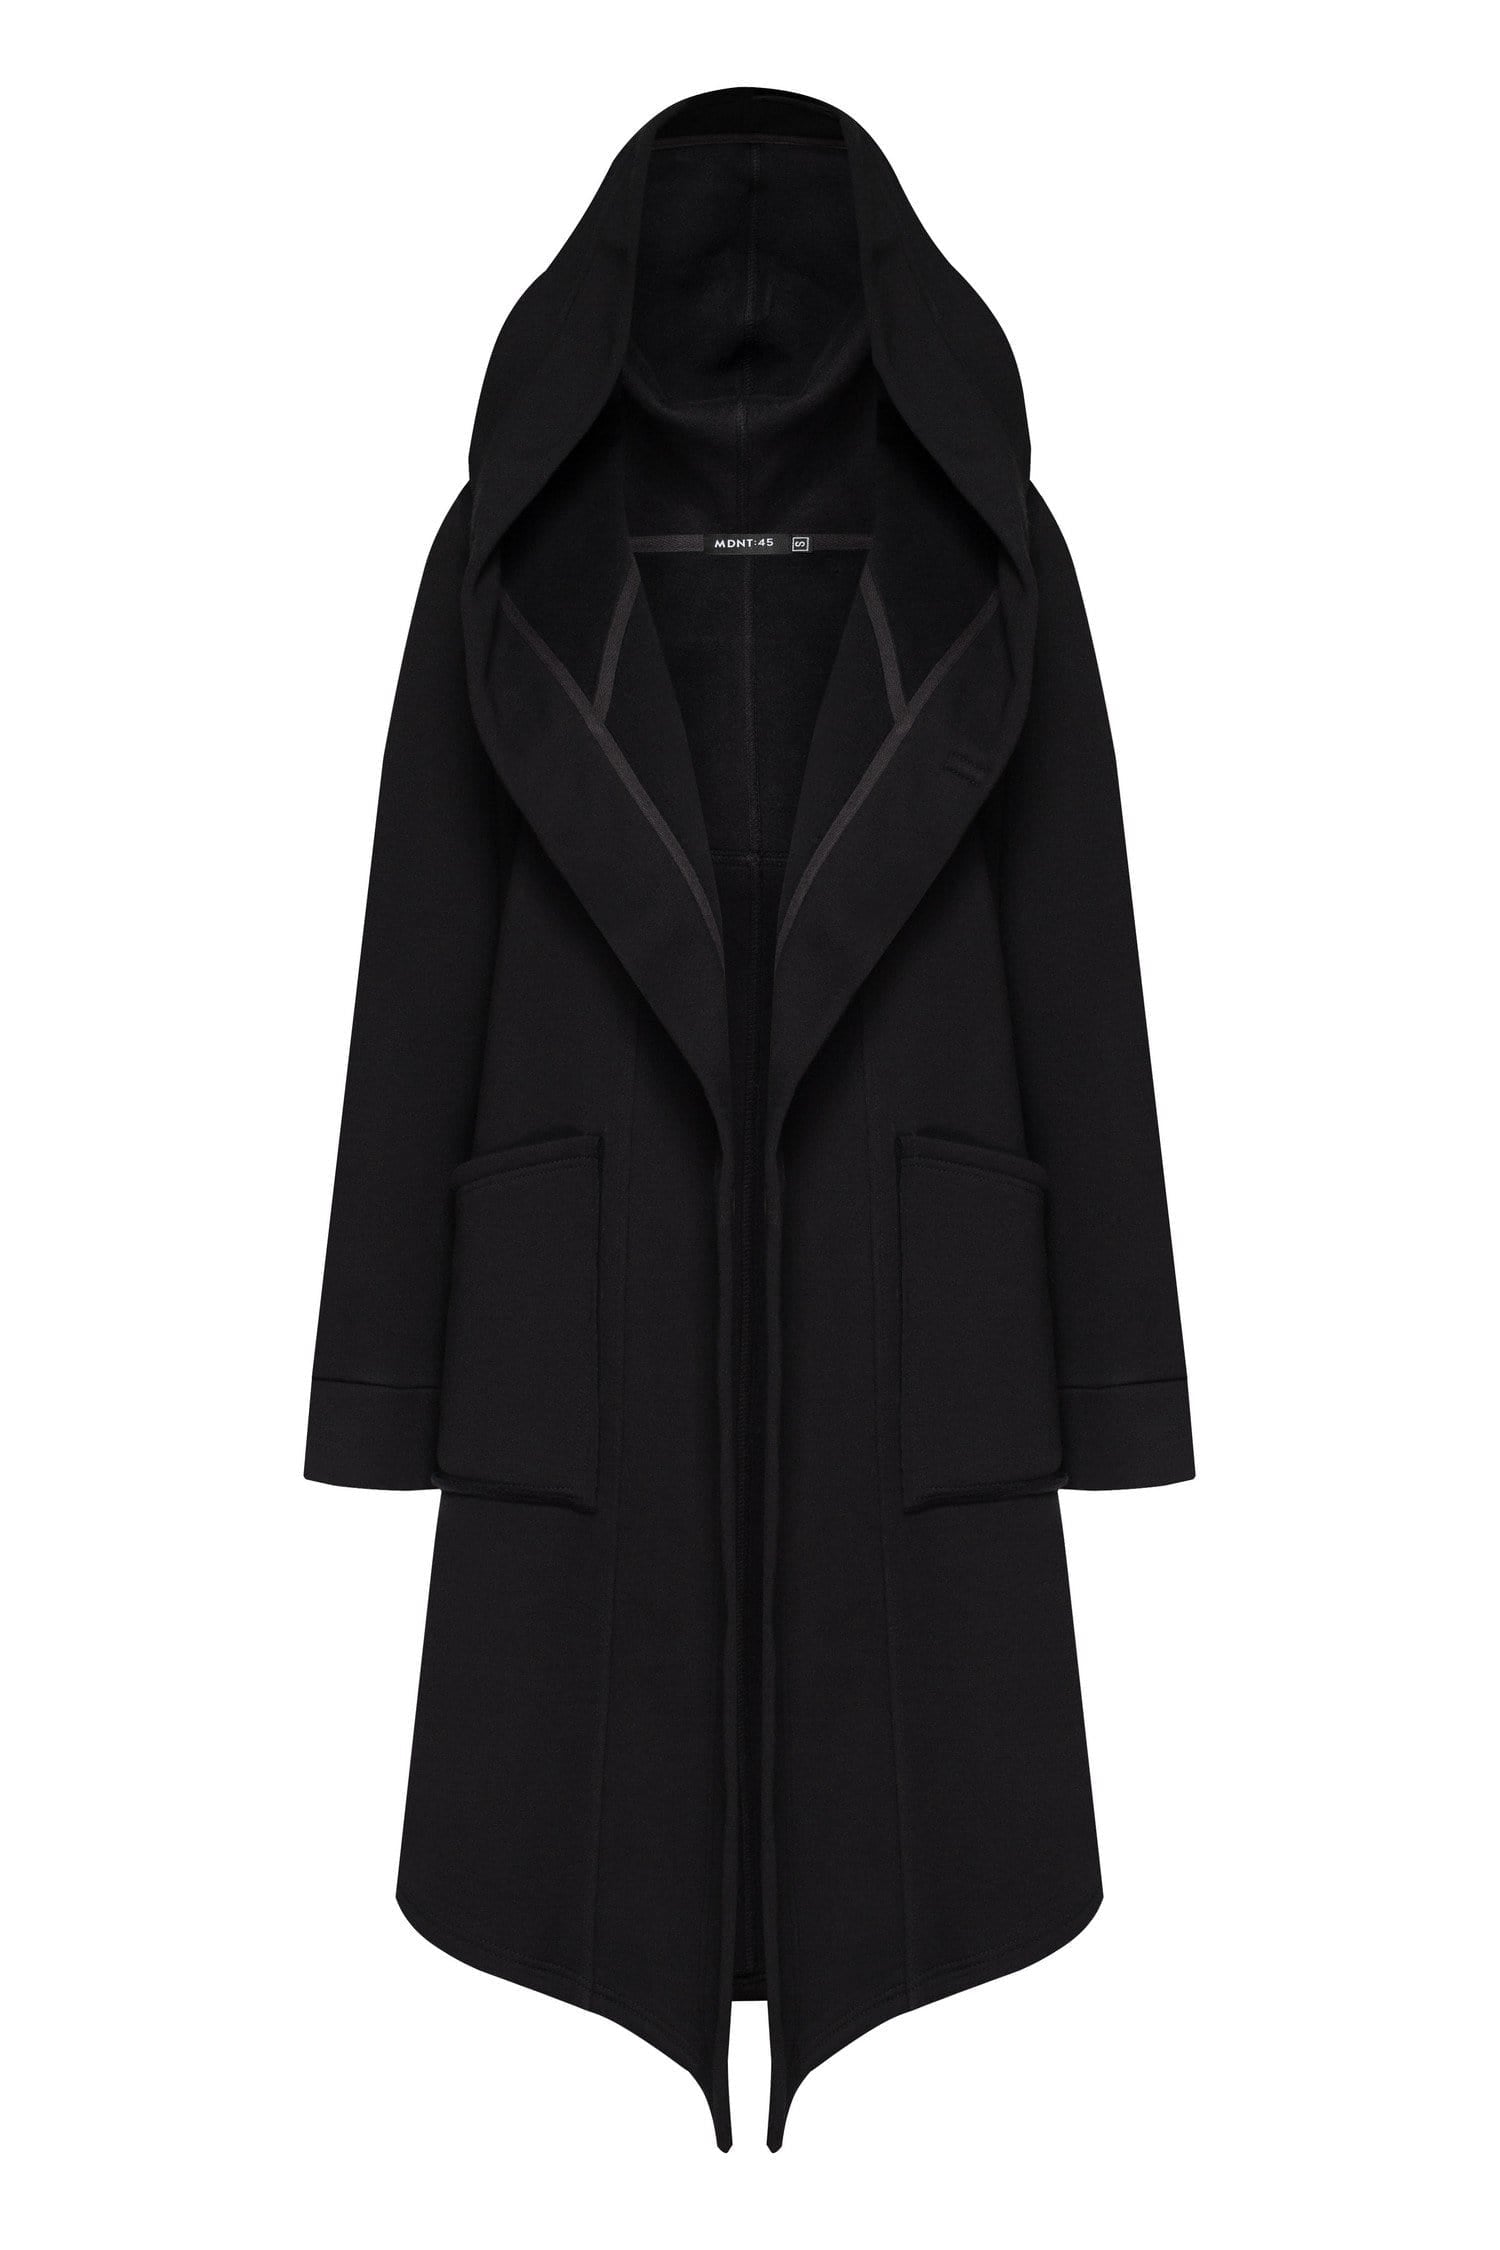 MDNT45 Coats & Jackets for Man Black hooded coat